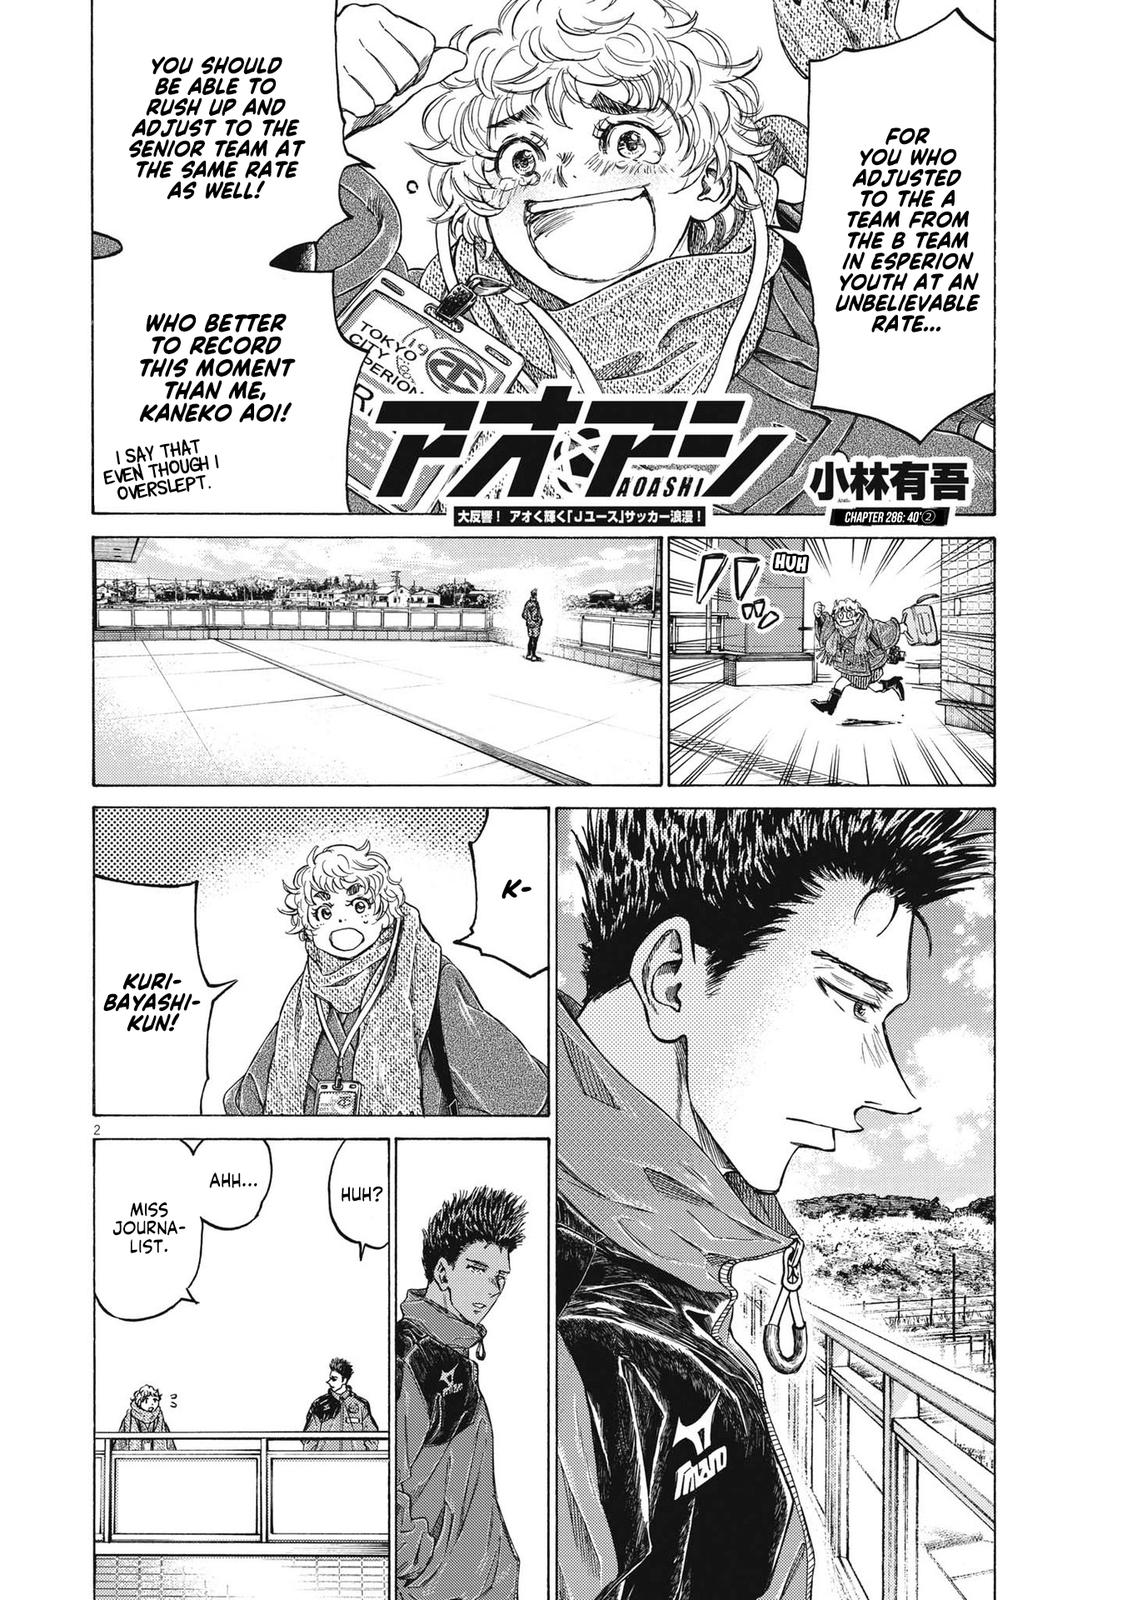 Ao Ashi, Chapter 335 - Ao Ashi Manga Online